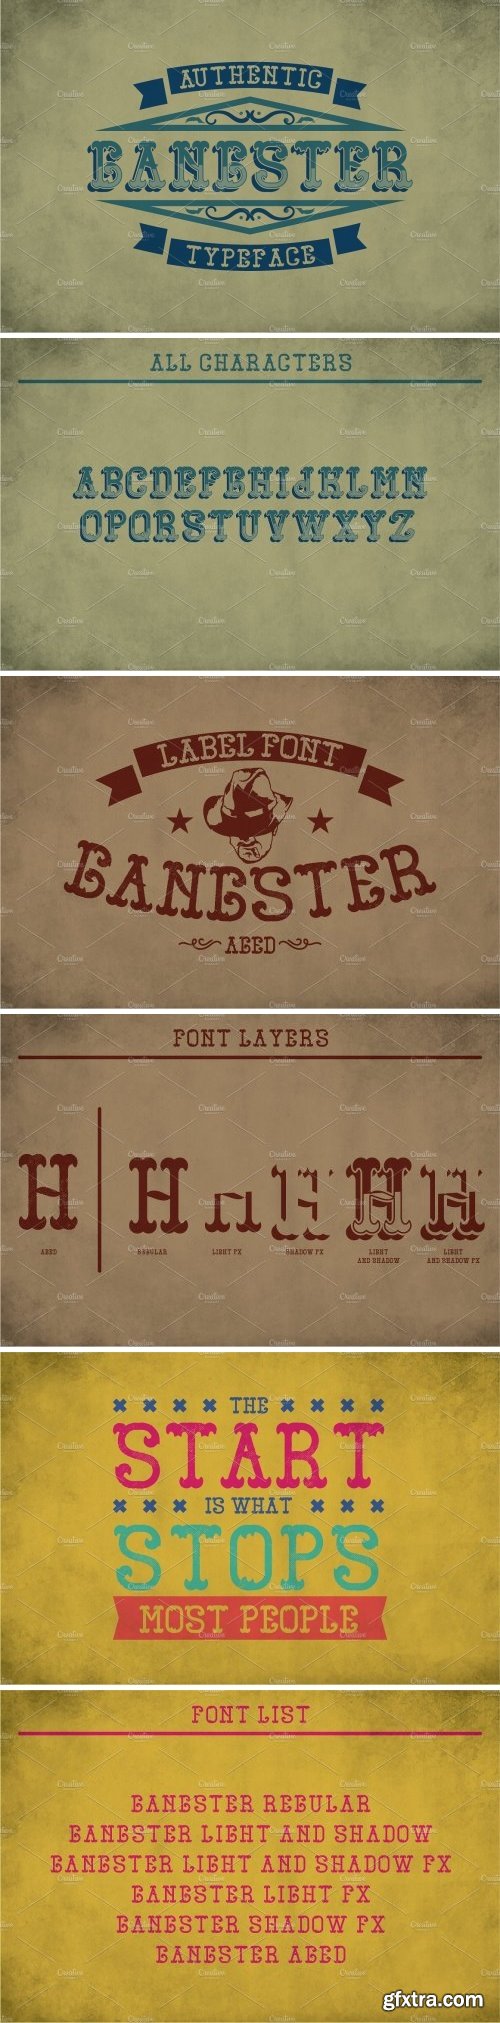 CM - Gangster Vintage Label Typeface 2091584